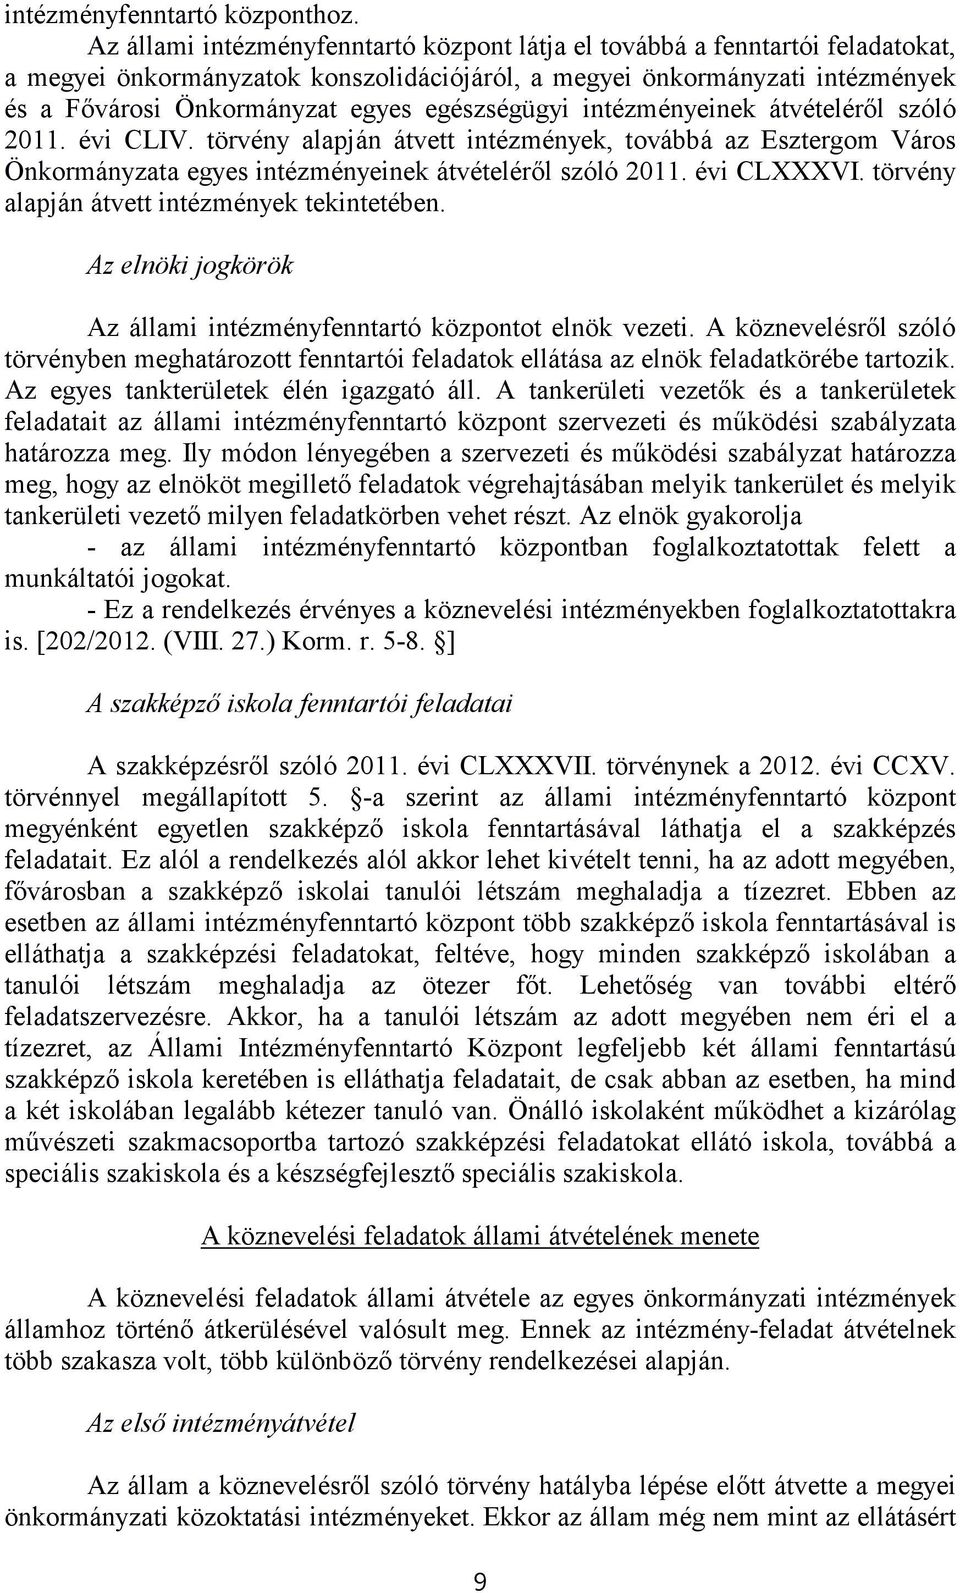 egészségügyi intézményeinek átvételéről szóló 2011. évi CLIV. törvény alapján átvett intézmények, továbbá az Esztergom Város Önkormányzata egyes intézményeinek átvételéről szóló 2011. évi CLXXXVI.